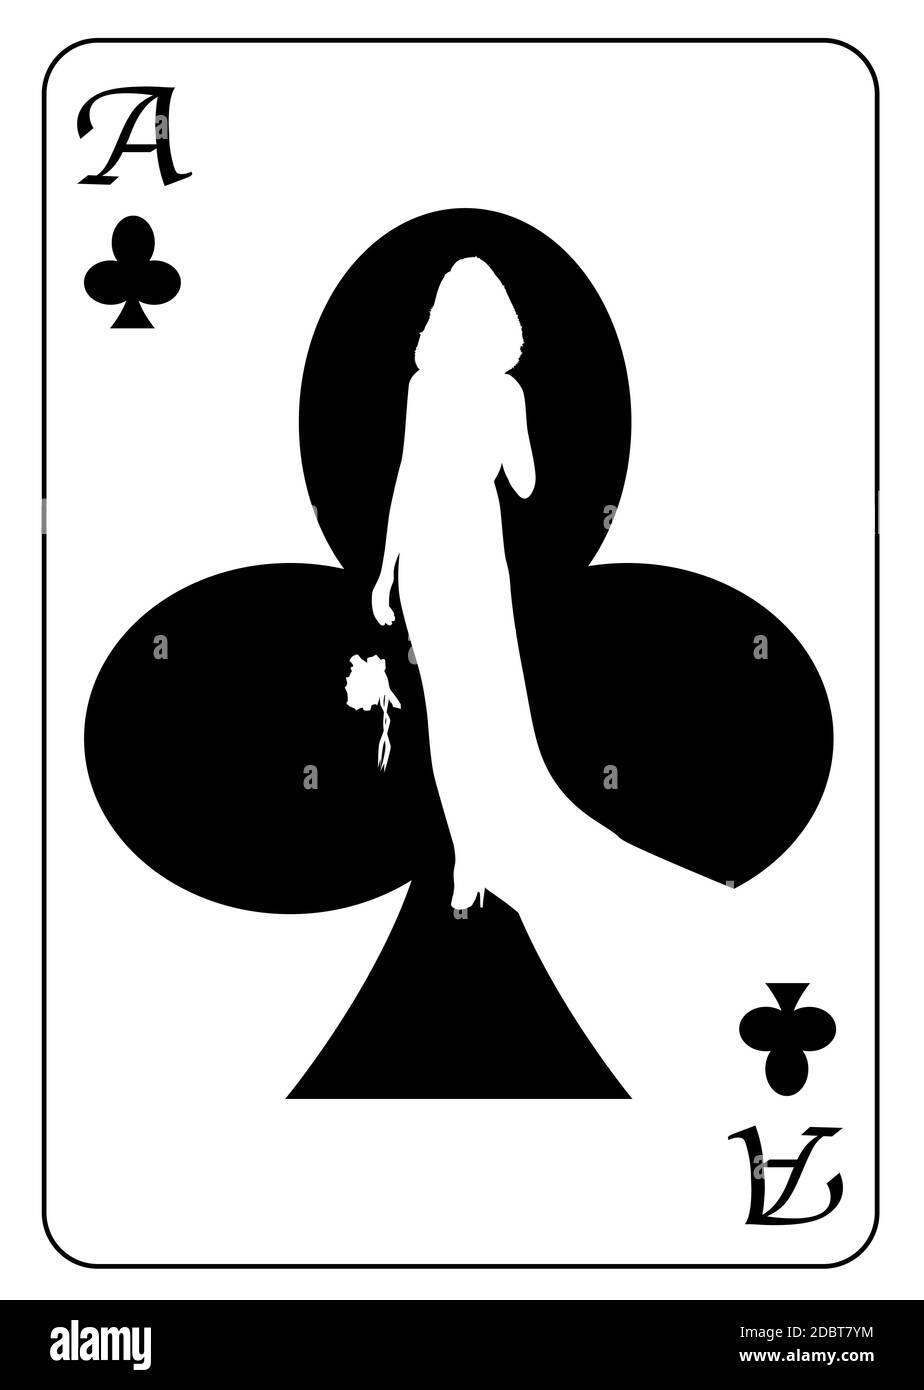 L'asso dei club con la silhouette di sposa alla ricerca del suo compagno di anima ambientato nel motivo della carta, tutti isolati su uno sfondo bianco Foto Stock